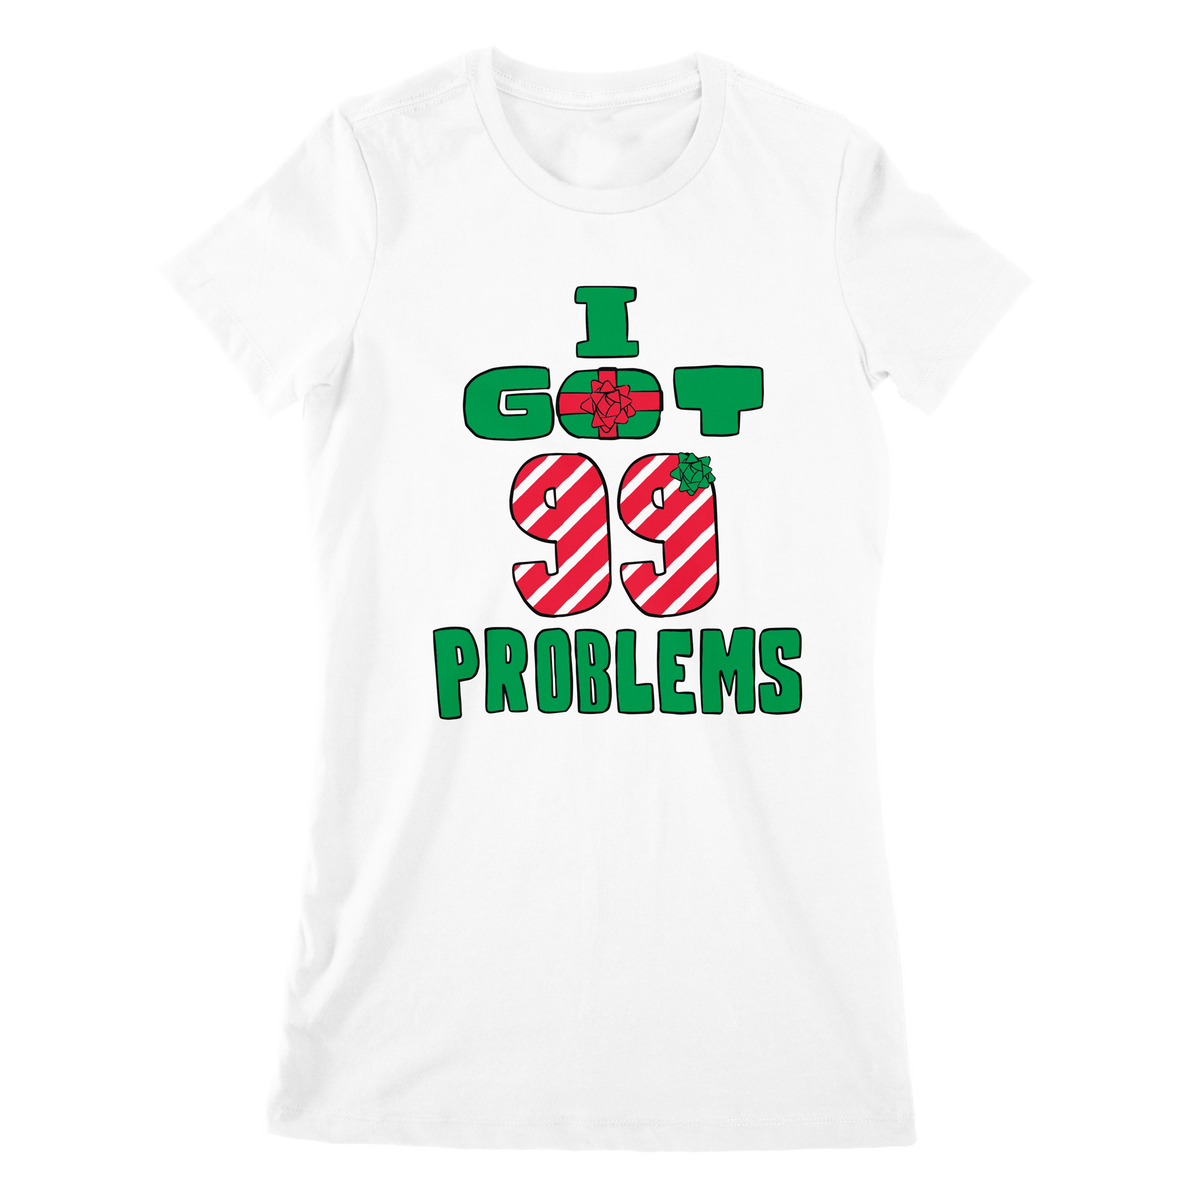 "99 Problems" Women's White Tee